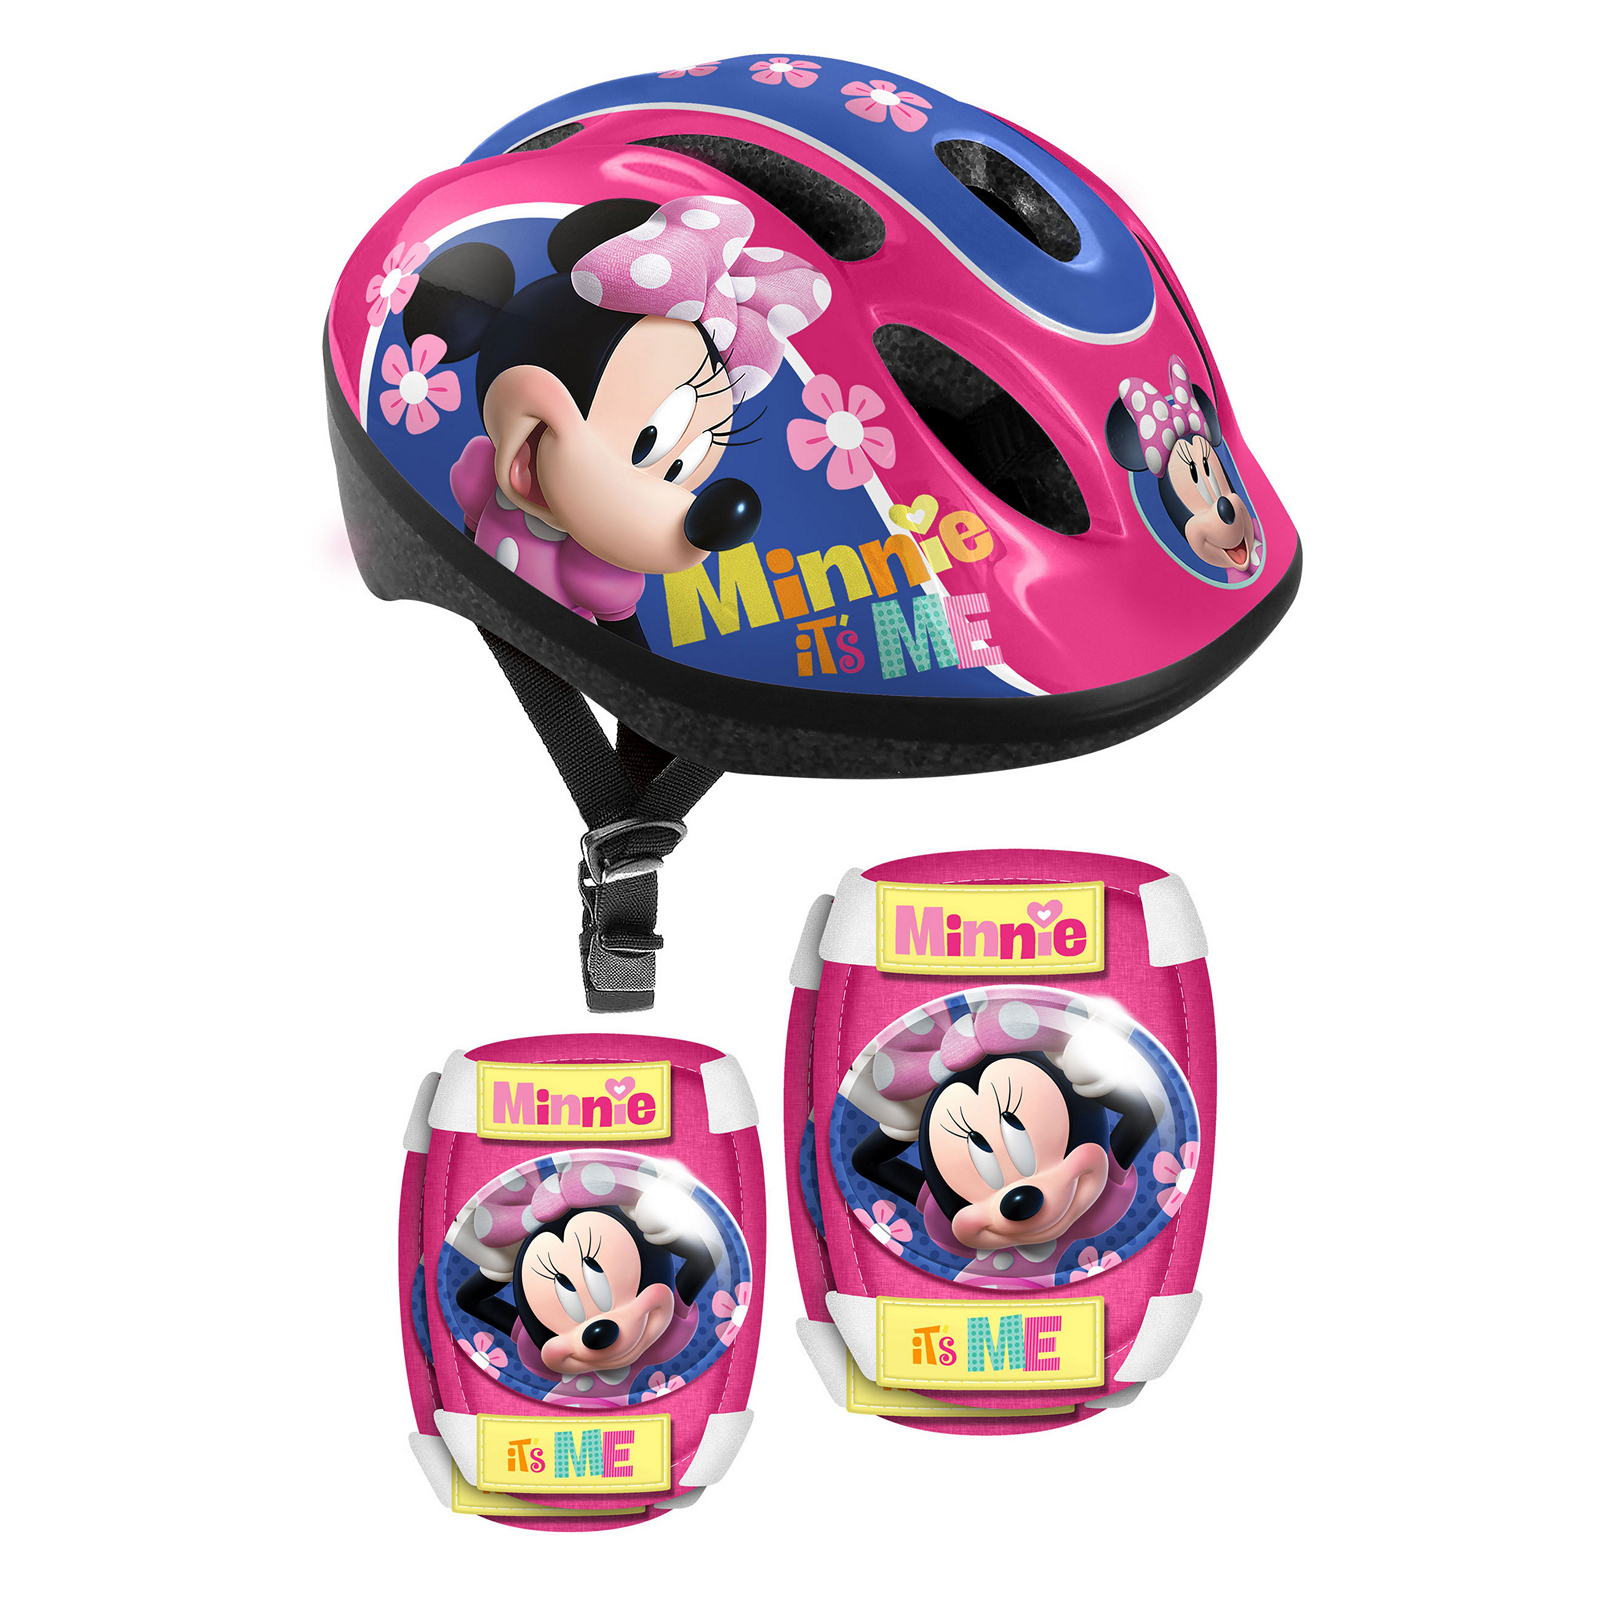 Capacete E Proteções Criança Minnie Mouse Tam. 53-56 Cm